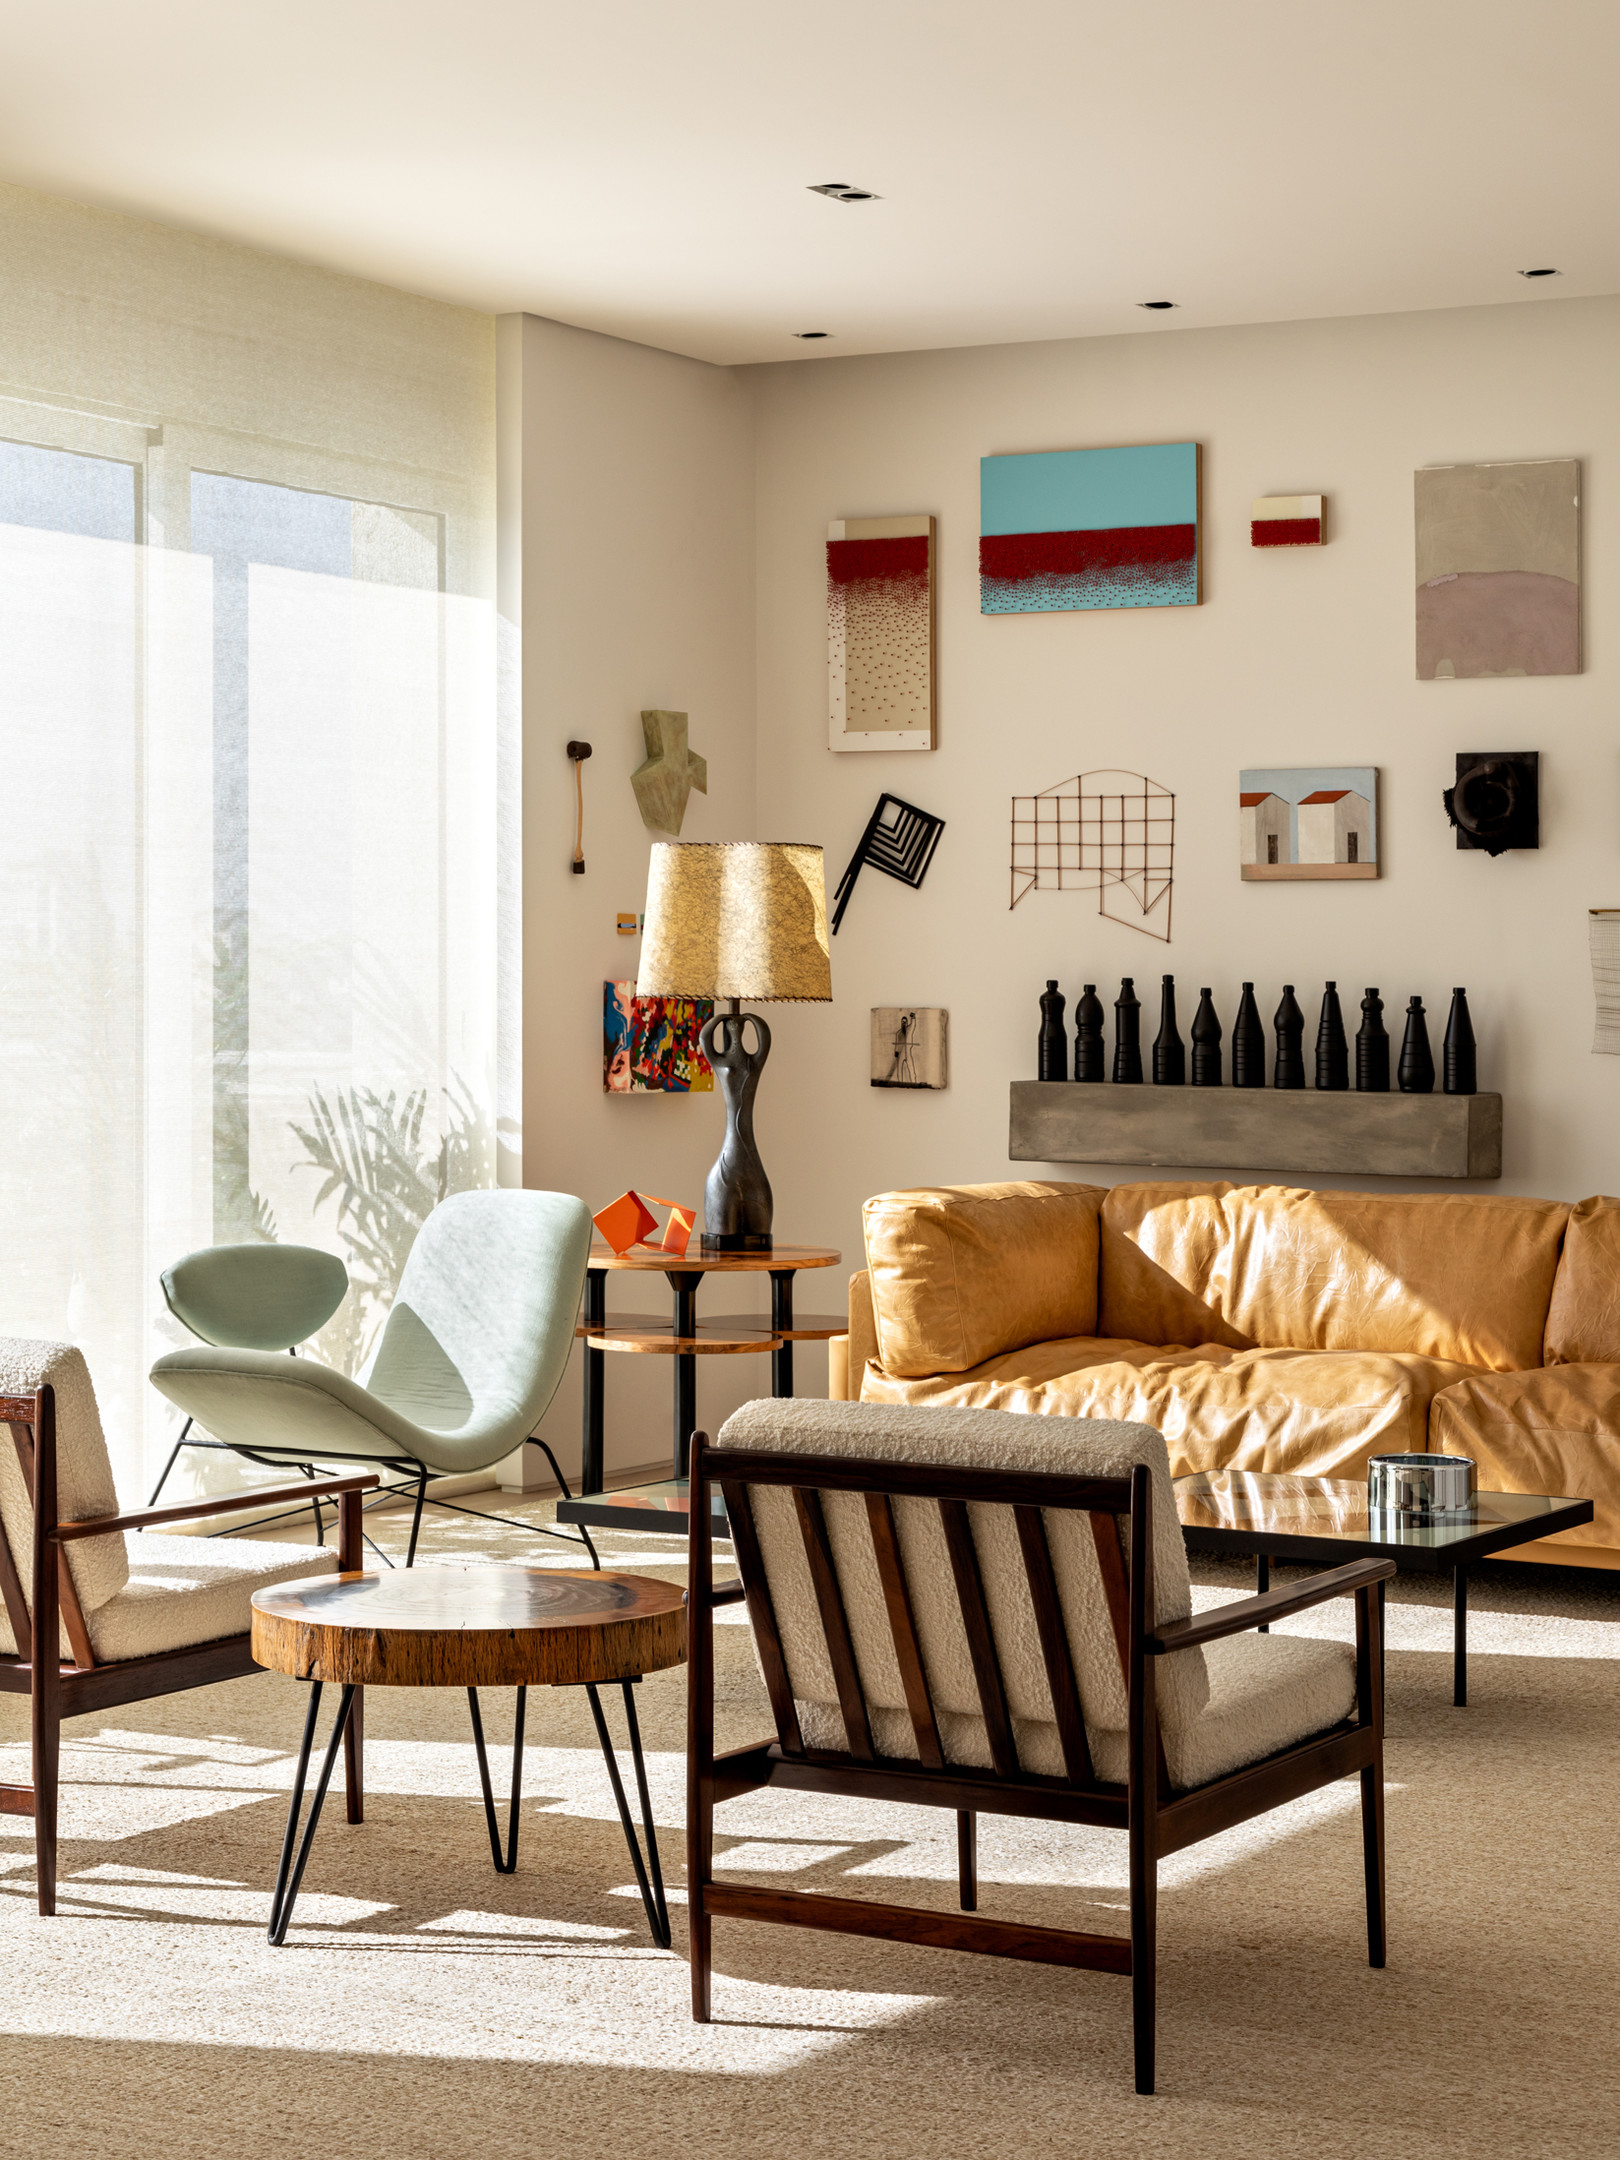 Phòng khách trong căn hộ tại thủ phủ São Paulo (Brazil) thu hút người nhìn bởi vẻ đẹp tươi sáng của nội thất, phụ kiện trang trí, màu sắc sống động, đặc biệt là chiếc ghế sofa bọc da êm ái như đang 'tắm mình' dưới ánh nắng mai ấm áp.